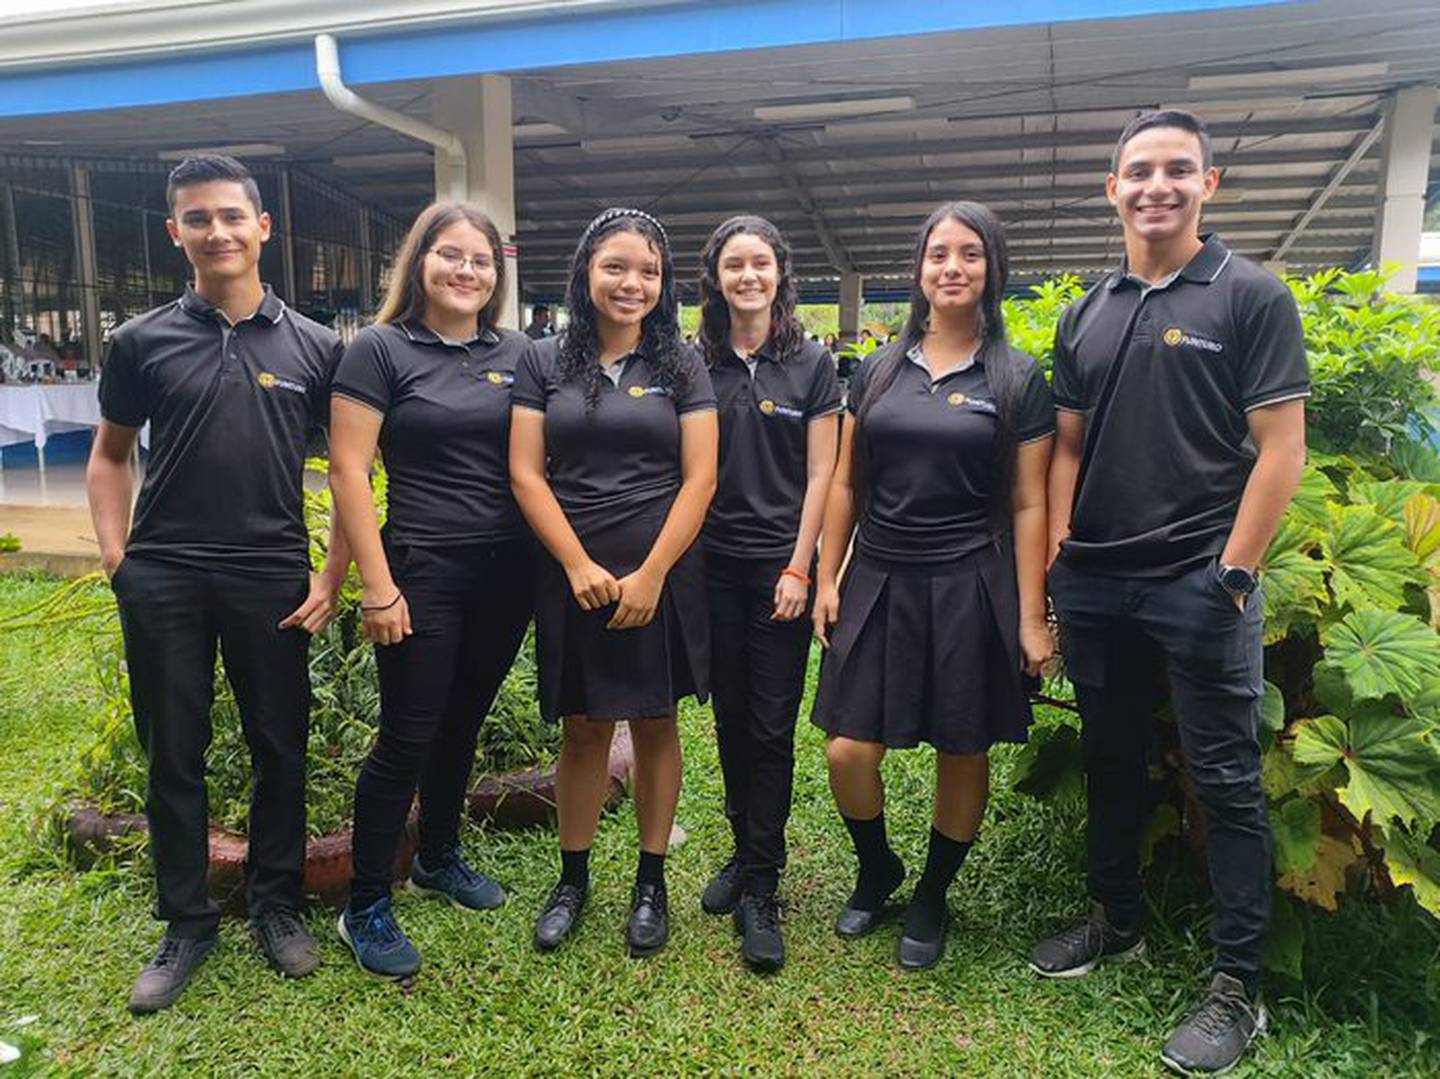 El programa La Compañía, liderado por Junior Achievement Costa Rica y que celebró su edición número 46, le dio el primer lugar, con un premio de ₡450.000, a la compañía Funturo, conformada por estudiantes del CTP de La Tigra de San Carlos